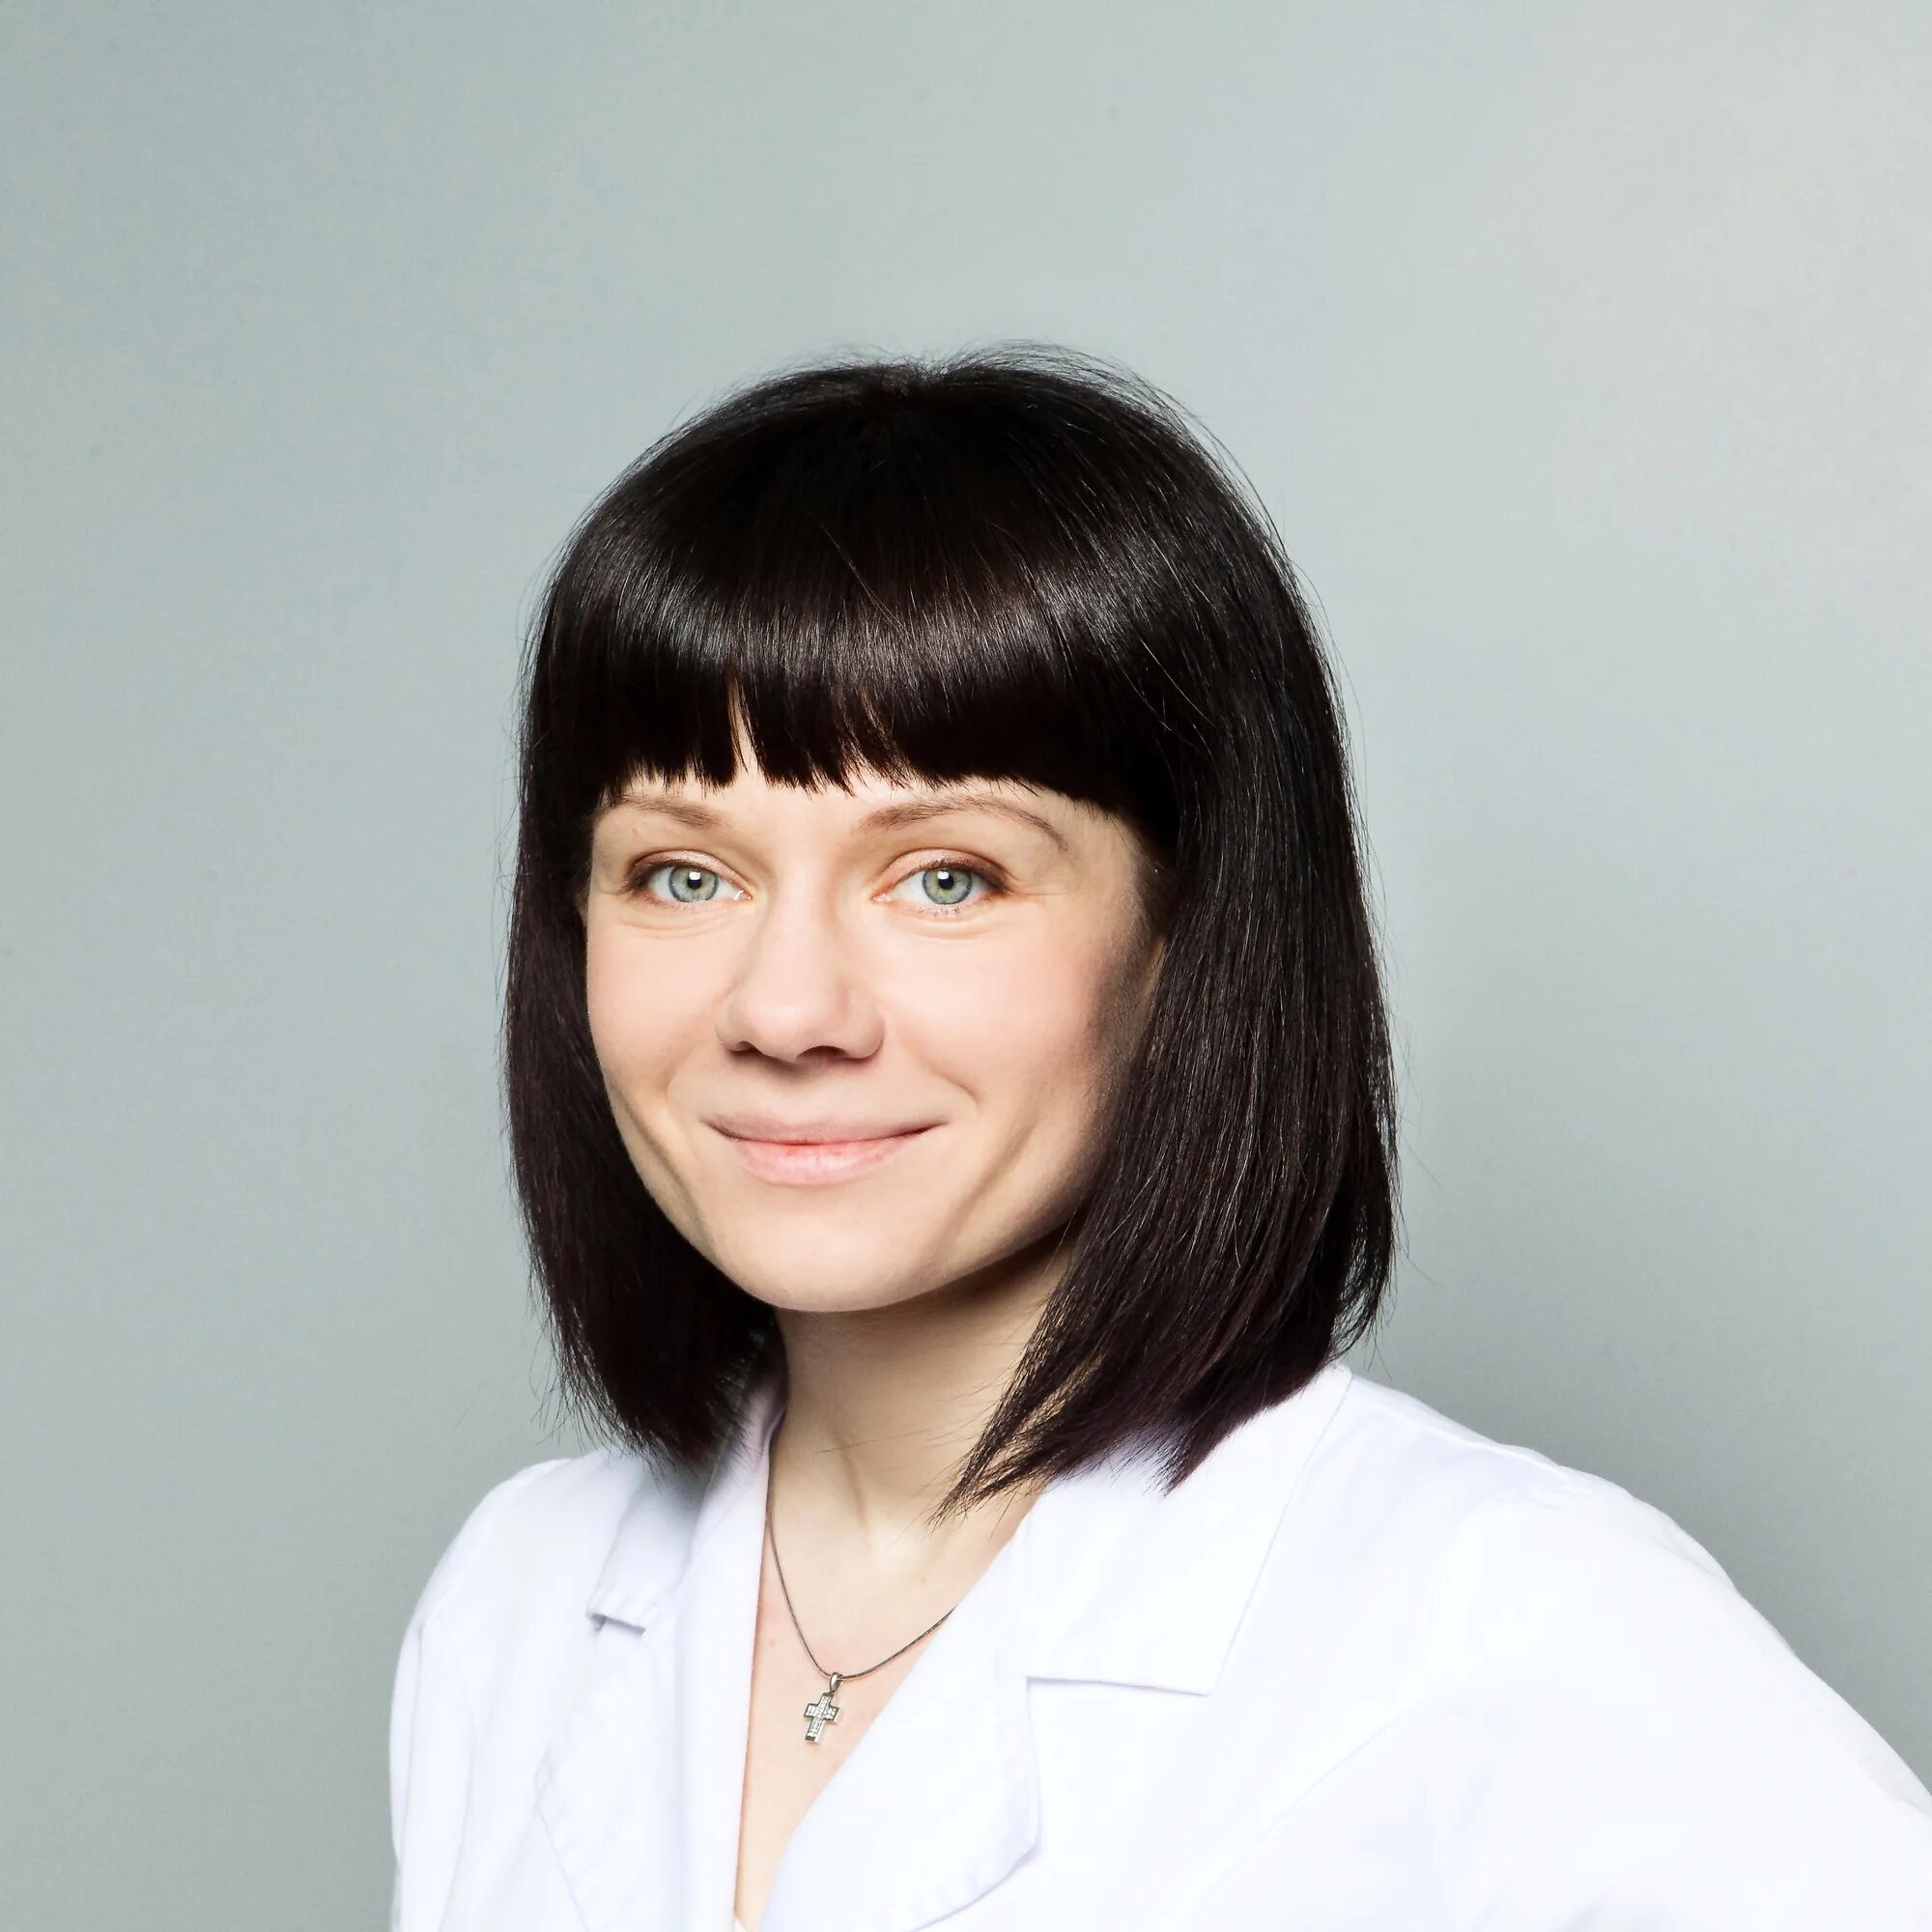 Кейян Виталия Александровна гастроэнтеролог, гепатолог.